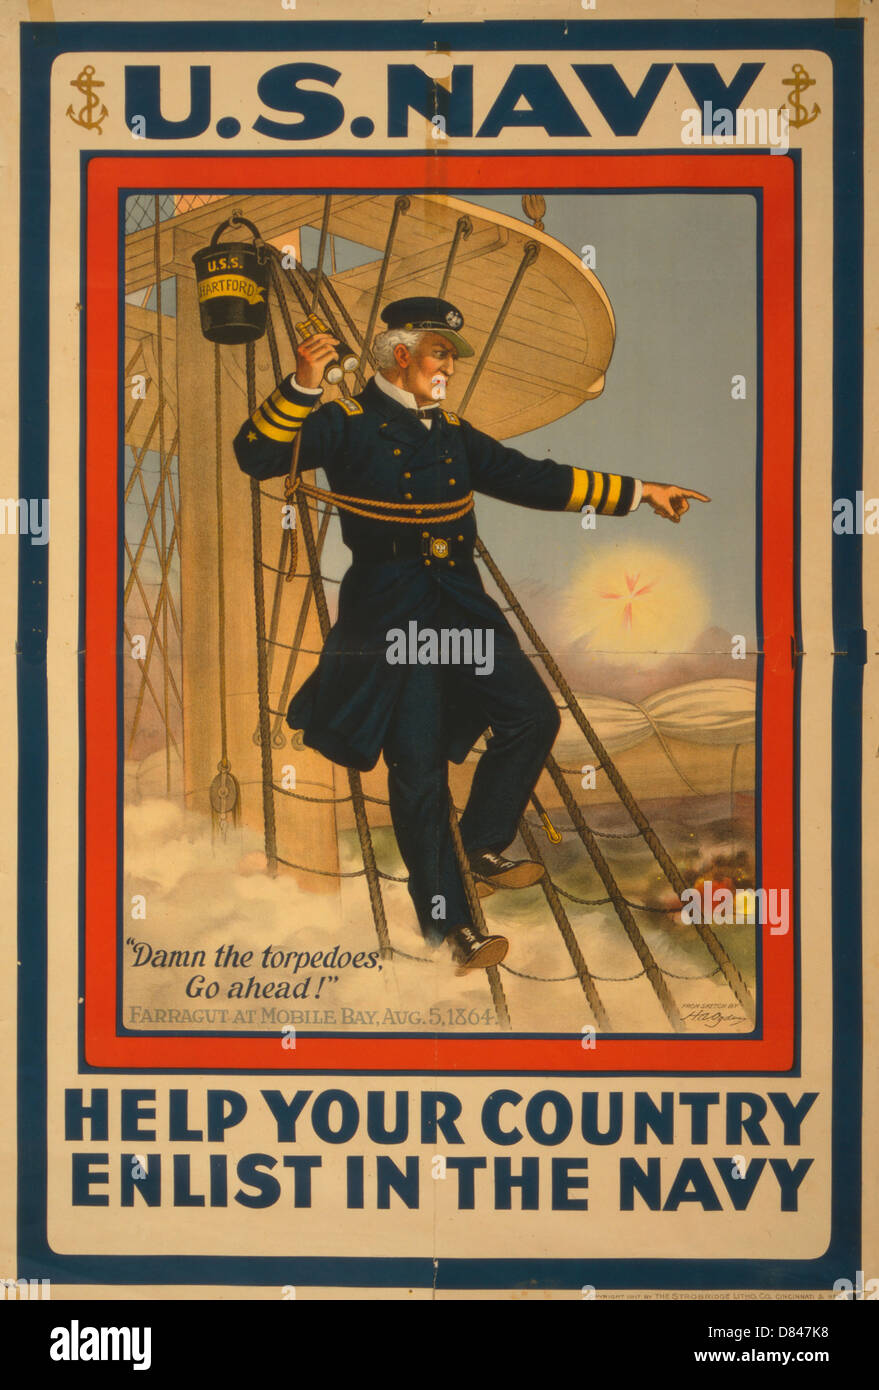 La Marine américaine - Aider votre pays, s'enrôler dans la Marine affiche montrant l'amiral Farragut, WWI Poster, 1917 Banque D'Images